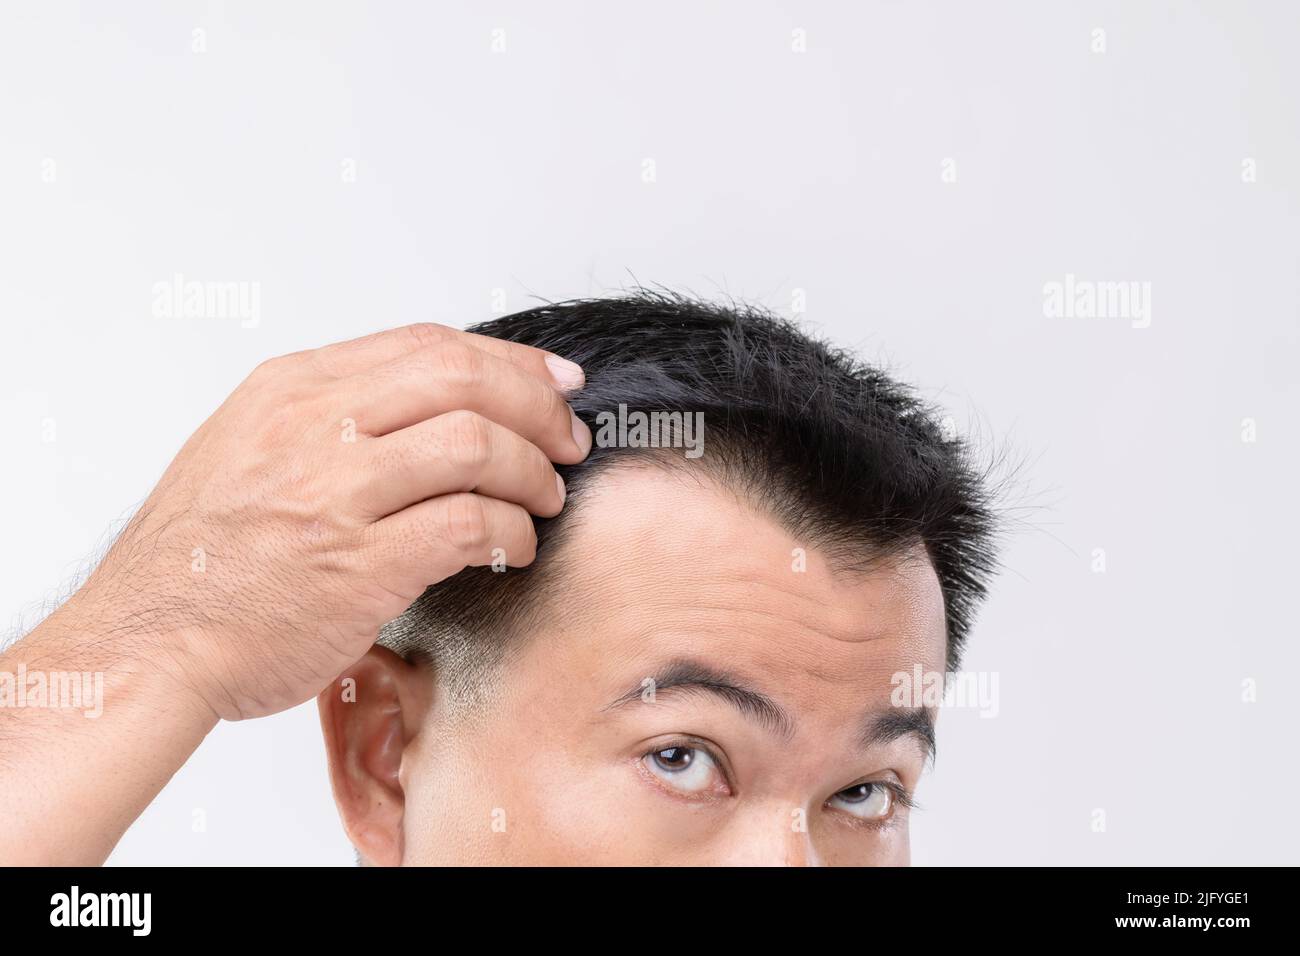 Portrait Asian Mann mit Sorge Gefühl und berühren auf seinem Kopf, um Glatze oder glabrous Problem zeigen. Studio-Aufnahmen mit Kopierbereich und grauem Hintergrund Stockfoto